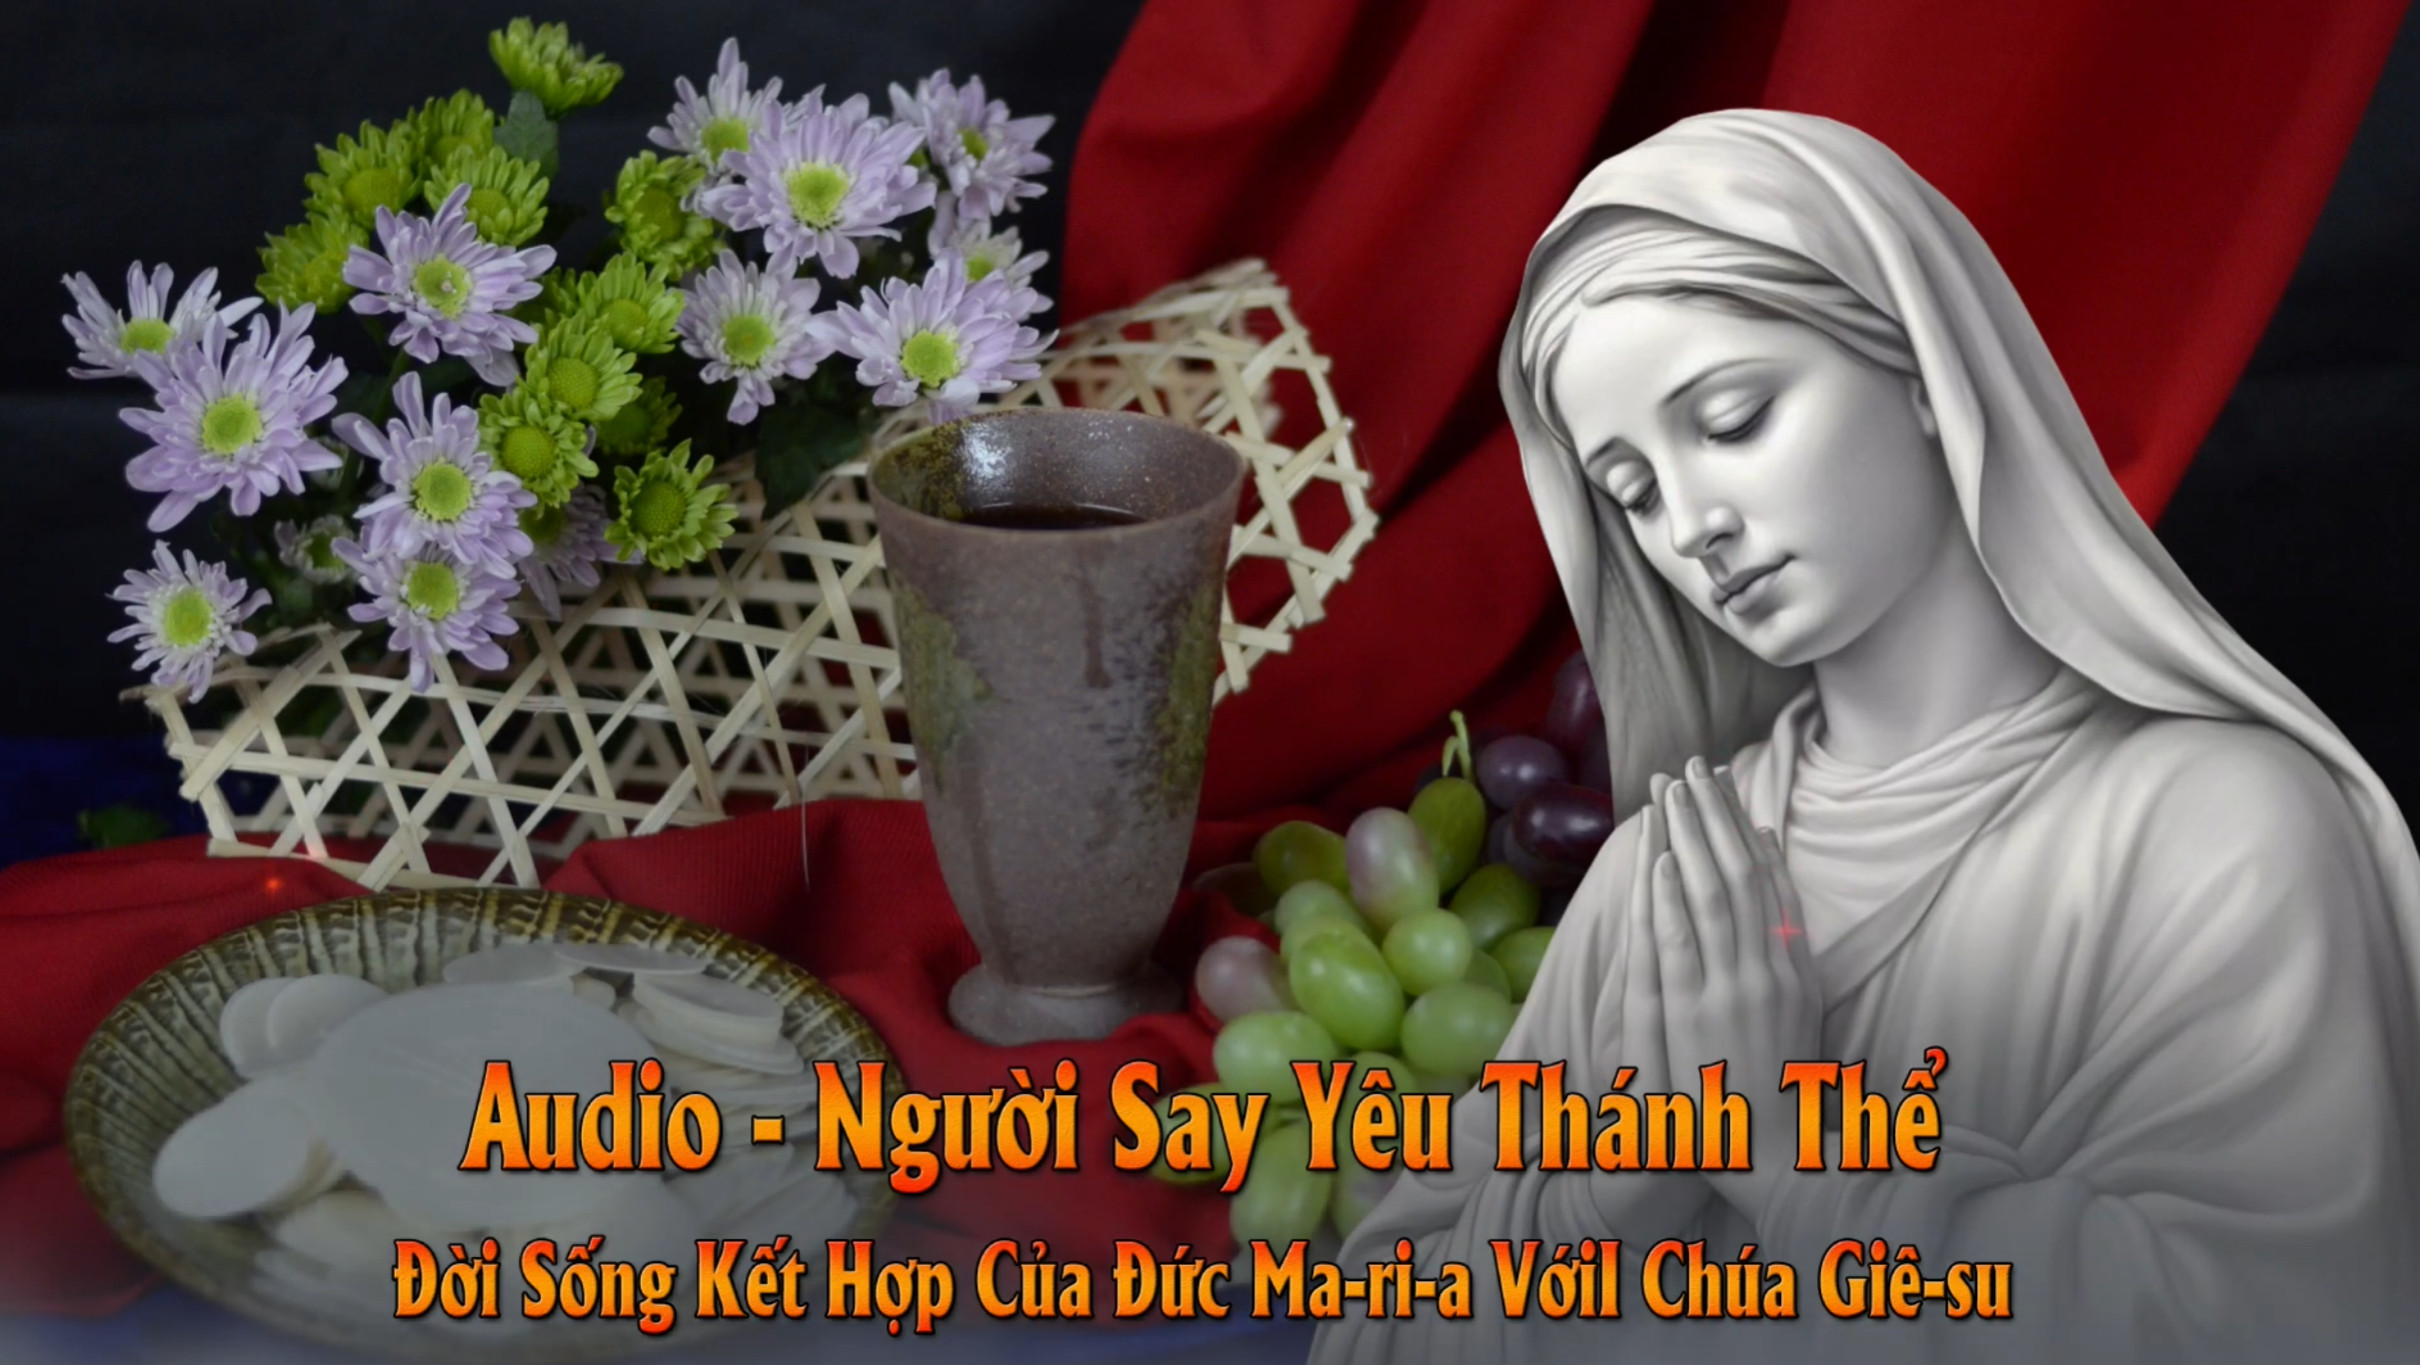 Audio - Đời Sống Kết Hợp Của Đức Ma-ri-a Với Chúa Giê-su